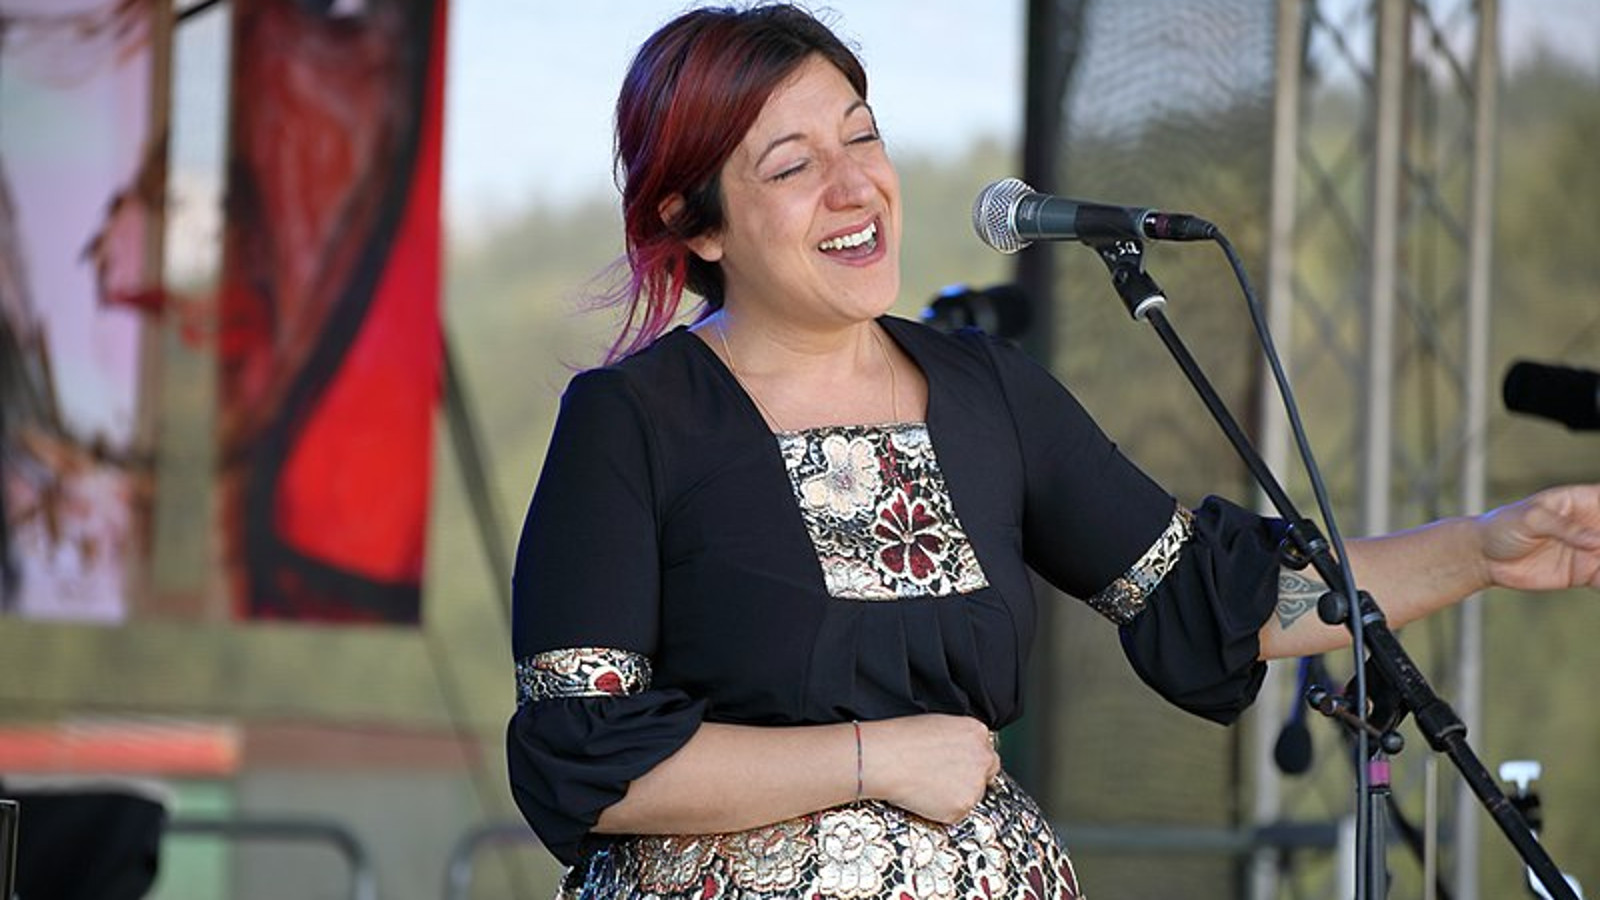 Kuvassa on Maria Mazzotta esiintymässä mikrofoni edessään.  Hänellä on kukallinen mekko päällään.